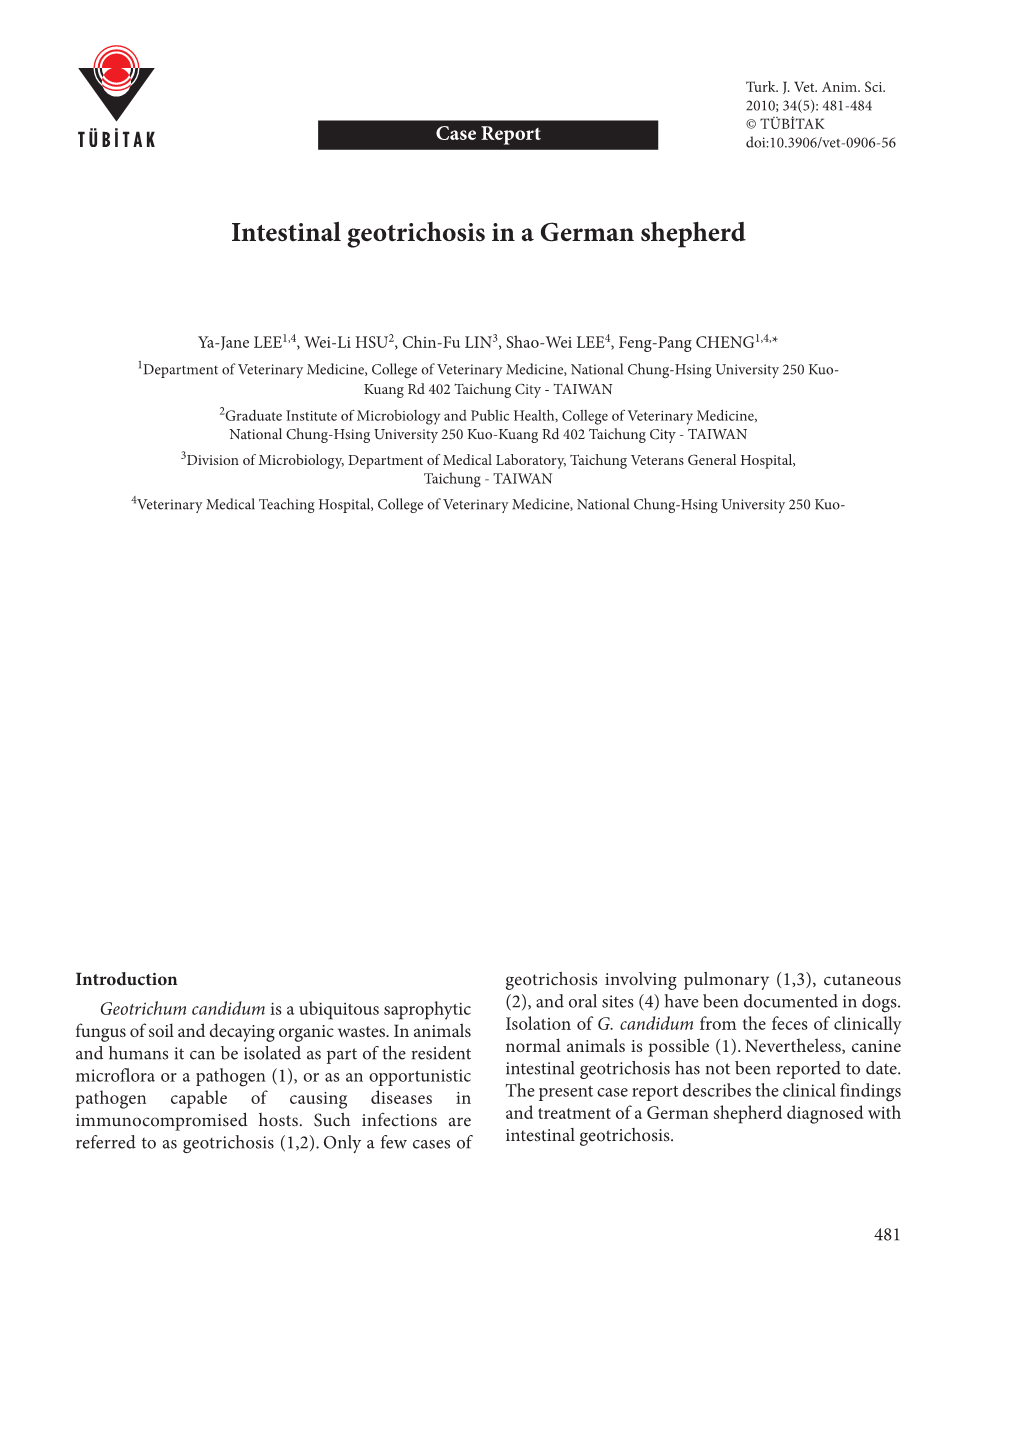 Intestinal Geotrichosis in a German Shepherd